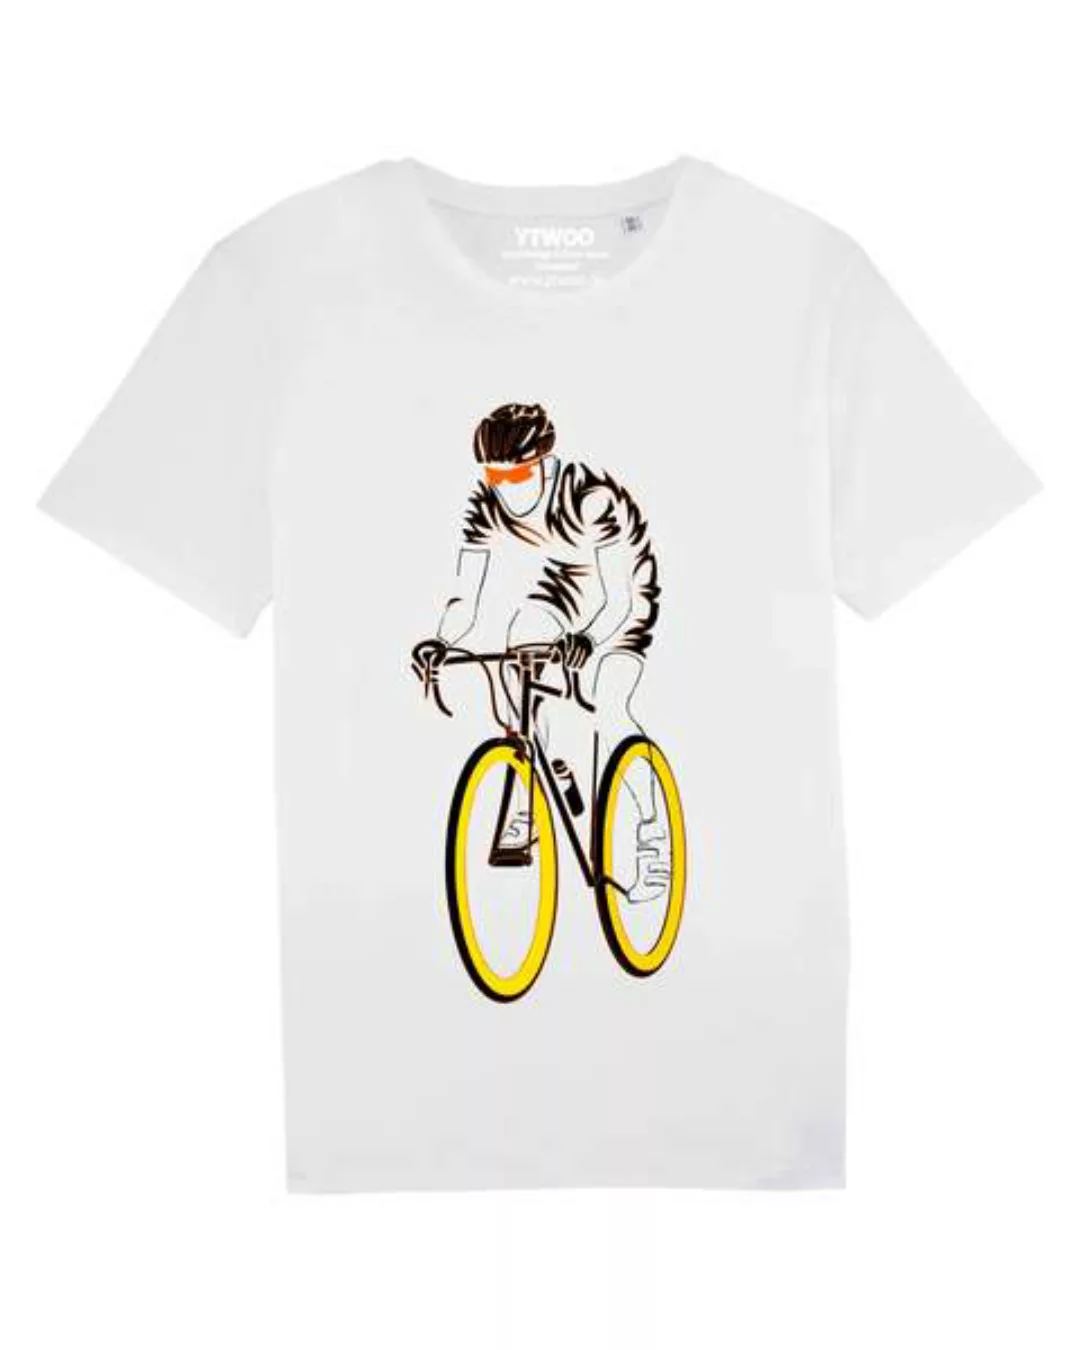 Bicycle Racing, Bio Shirt Rennrad. Tshirt Mit Fahrrad, Bike günstig online kaufen